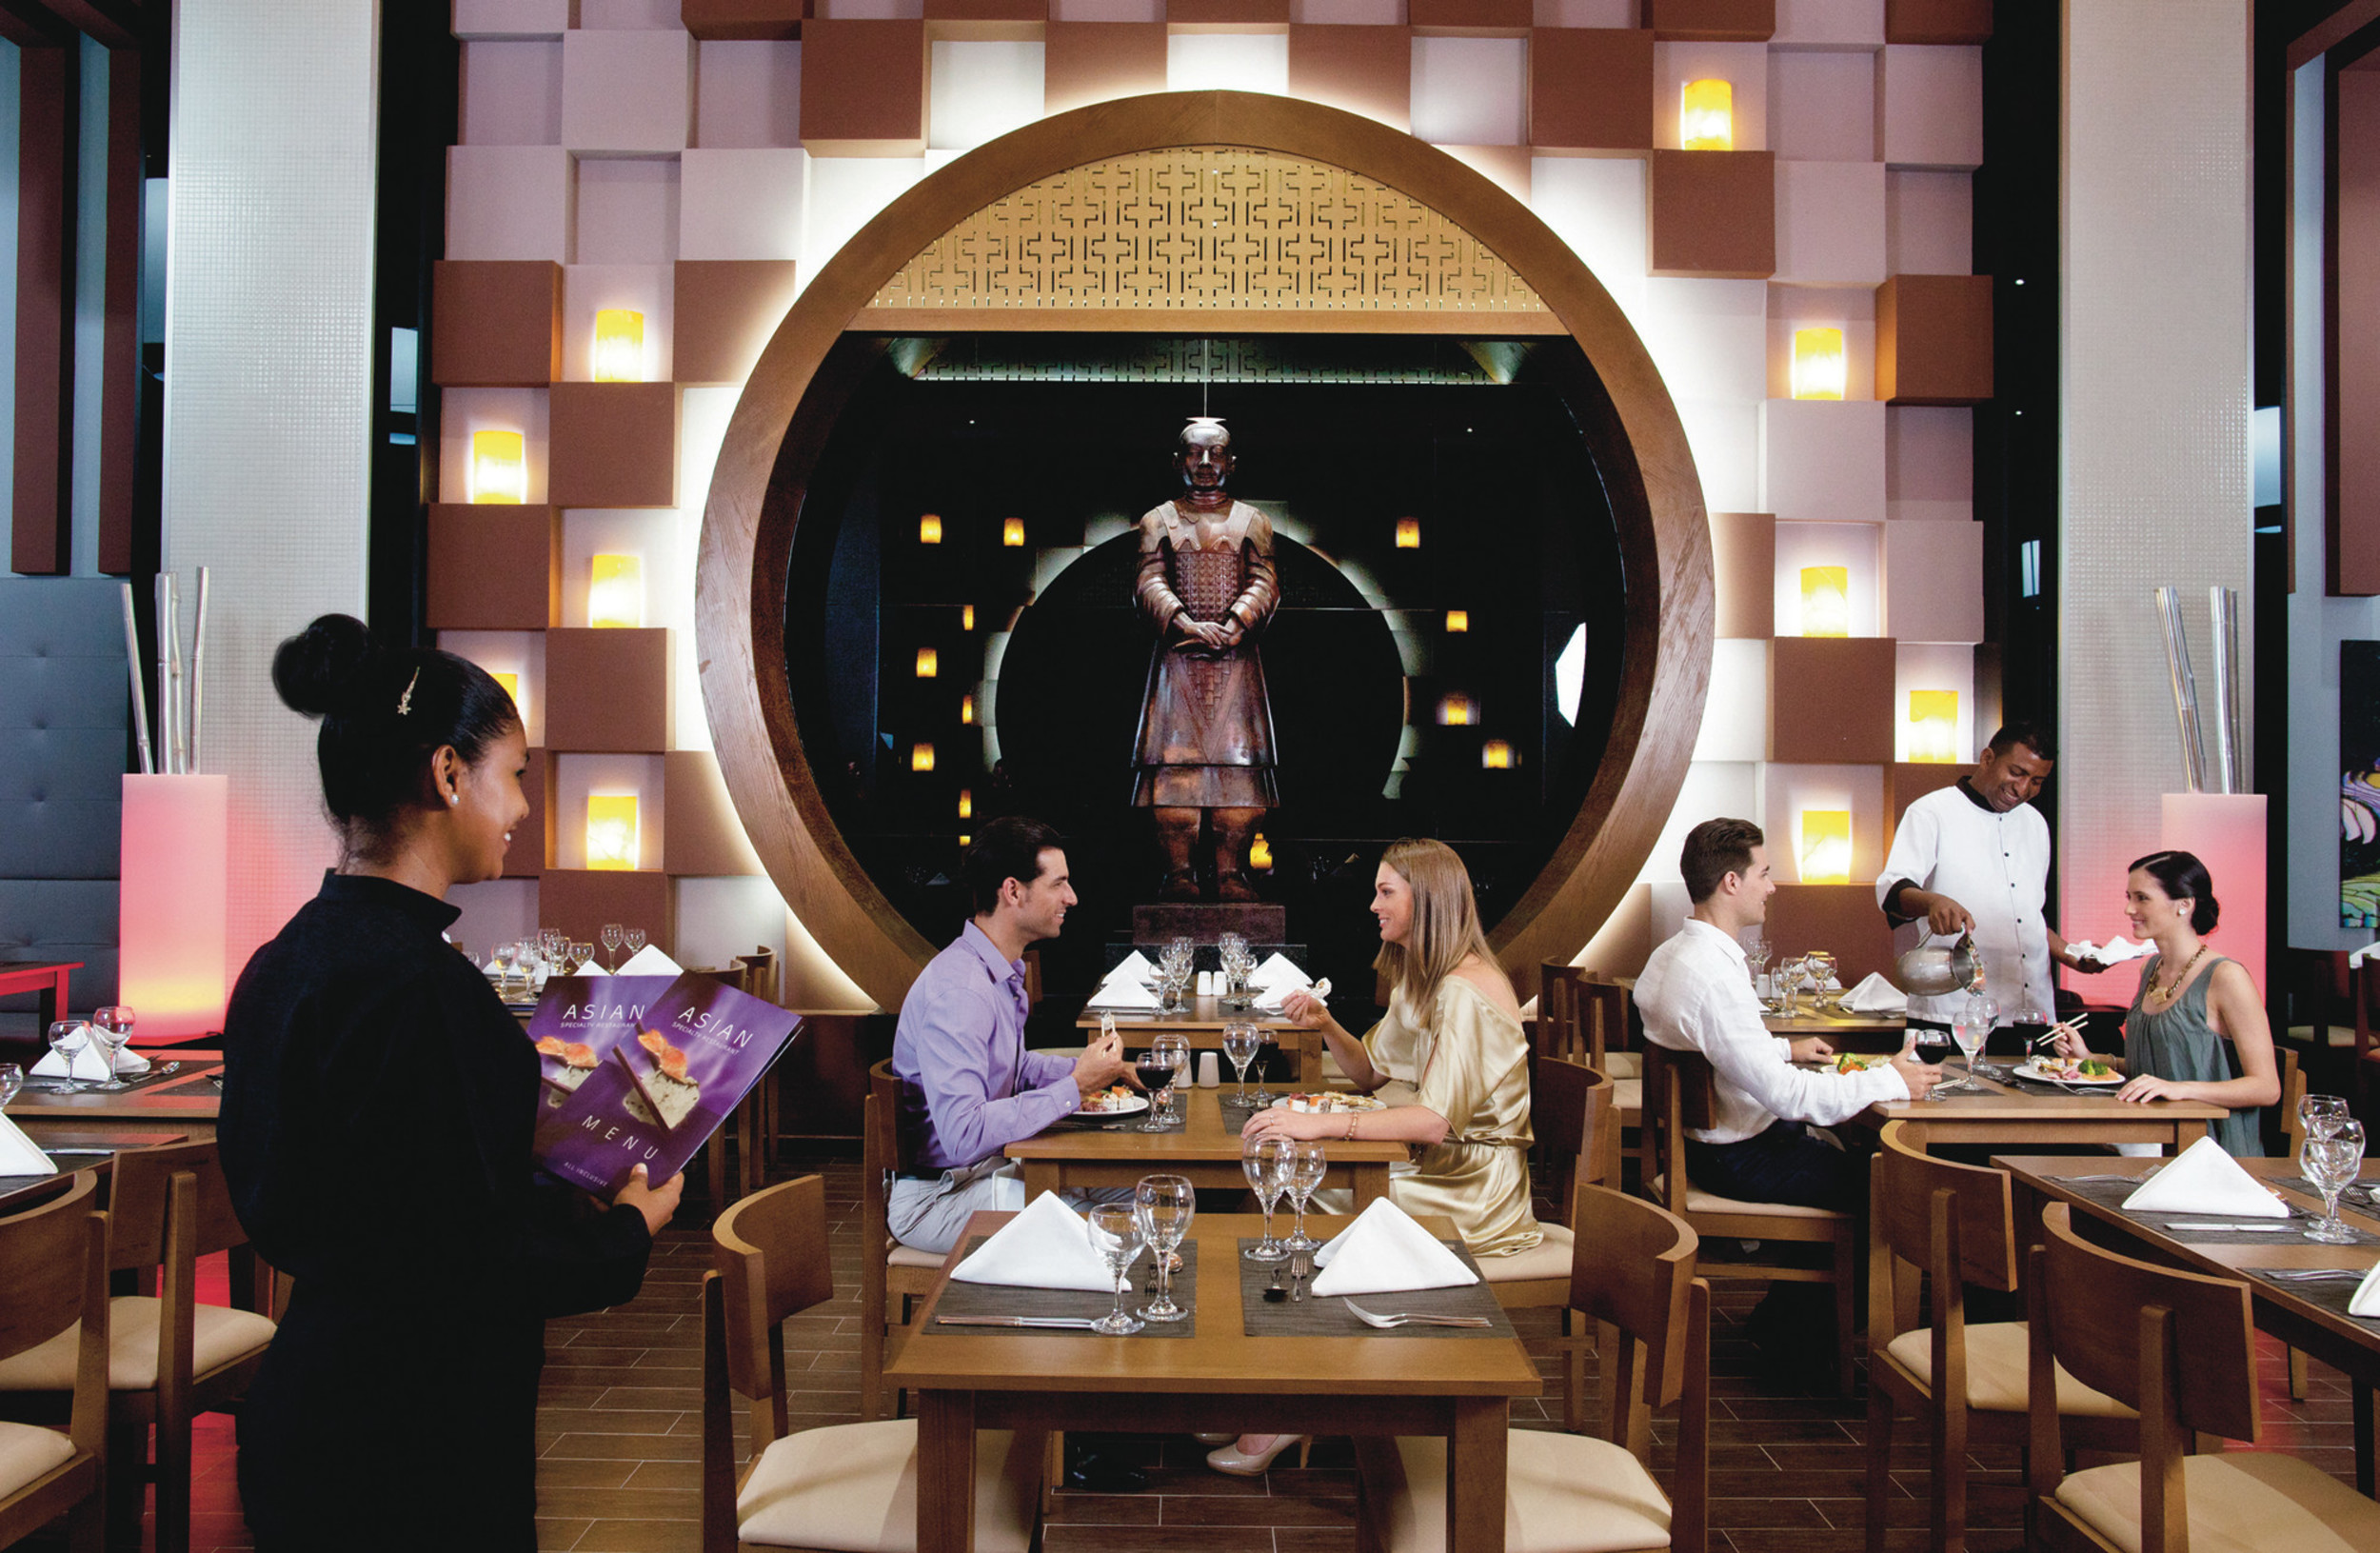 https://bubo.sk/uploads/galleries/21309/pbl_14_049---asian-restaurant.jpg